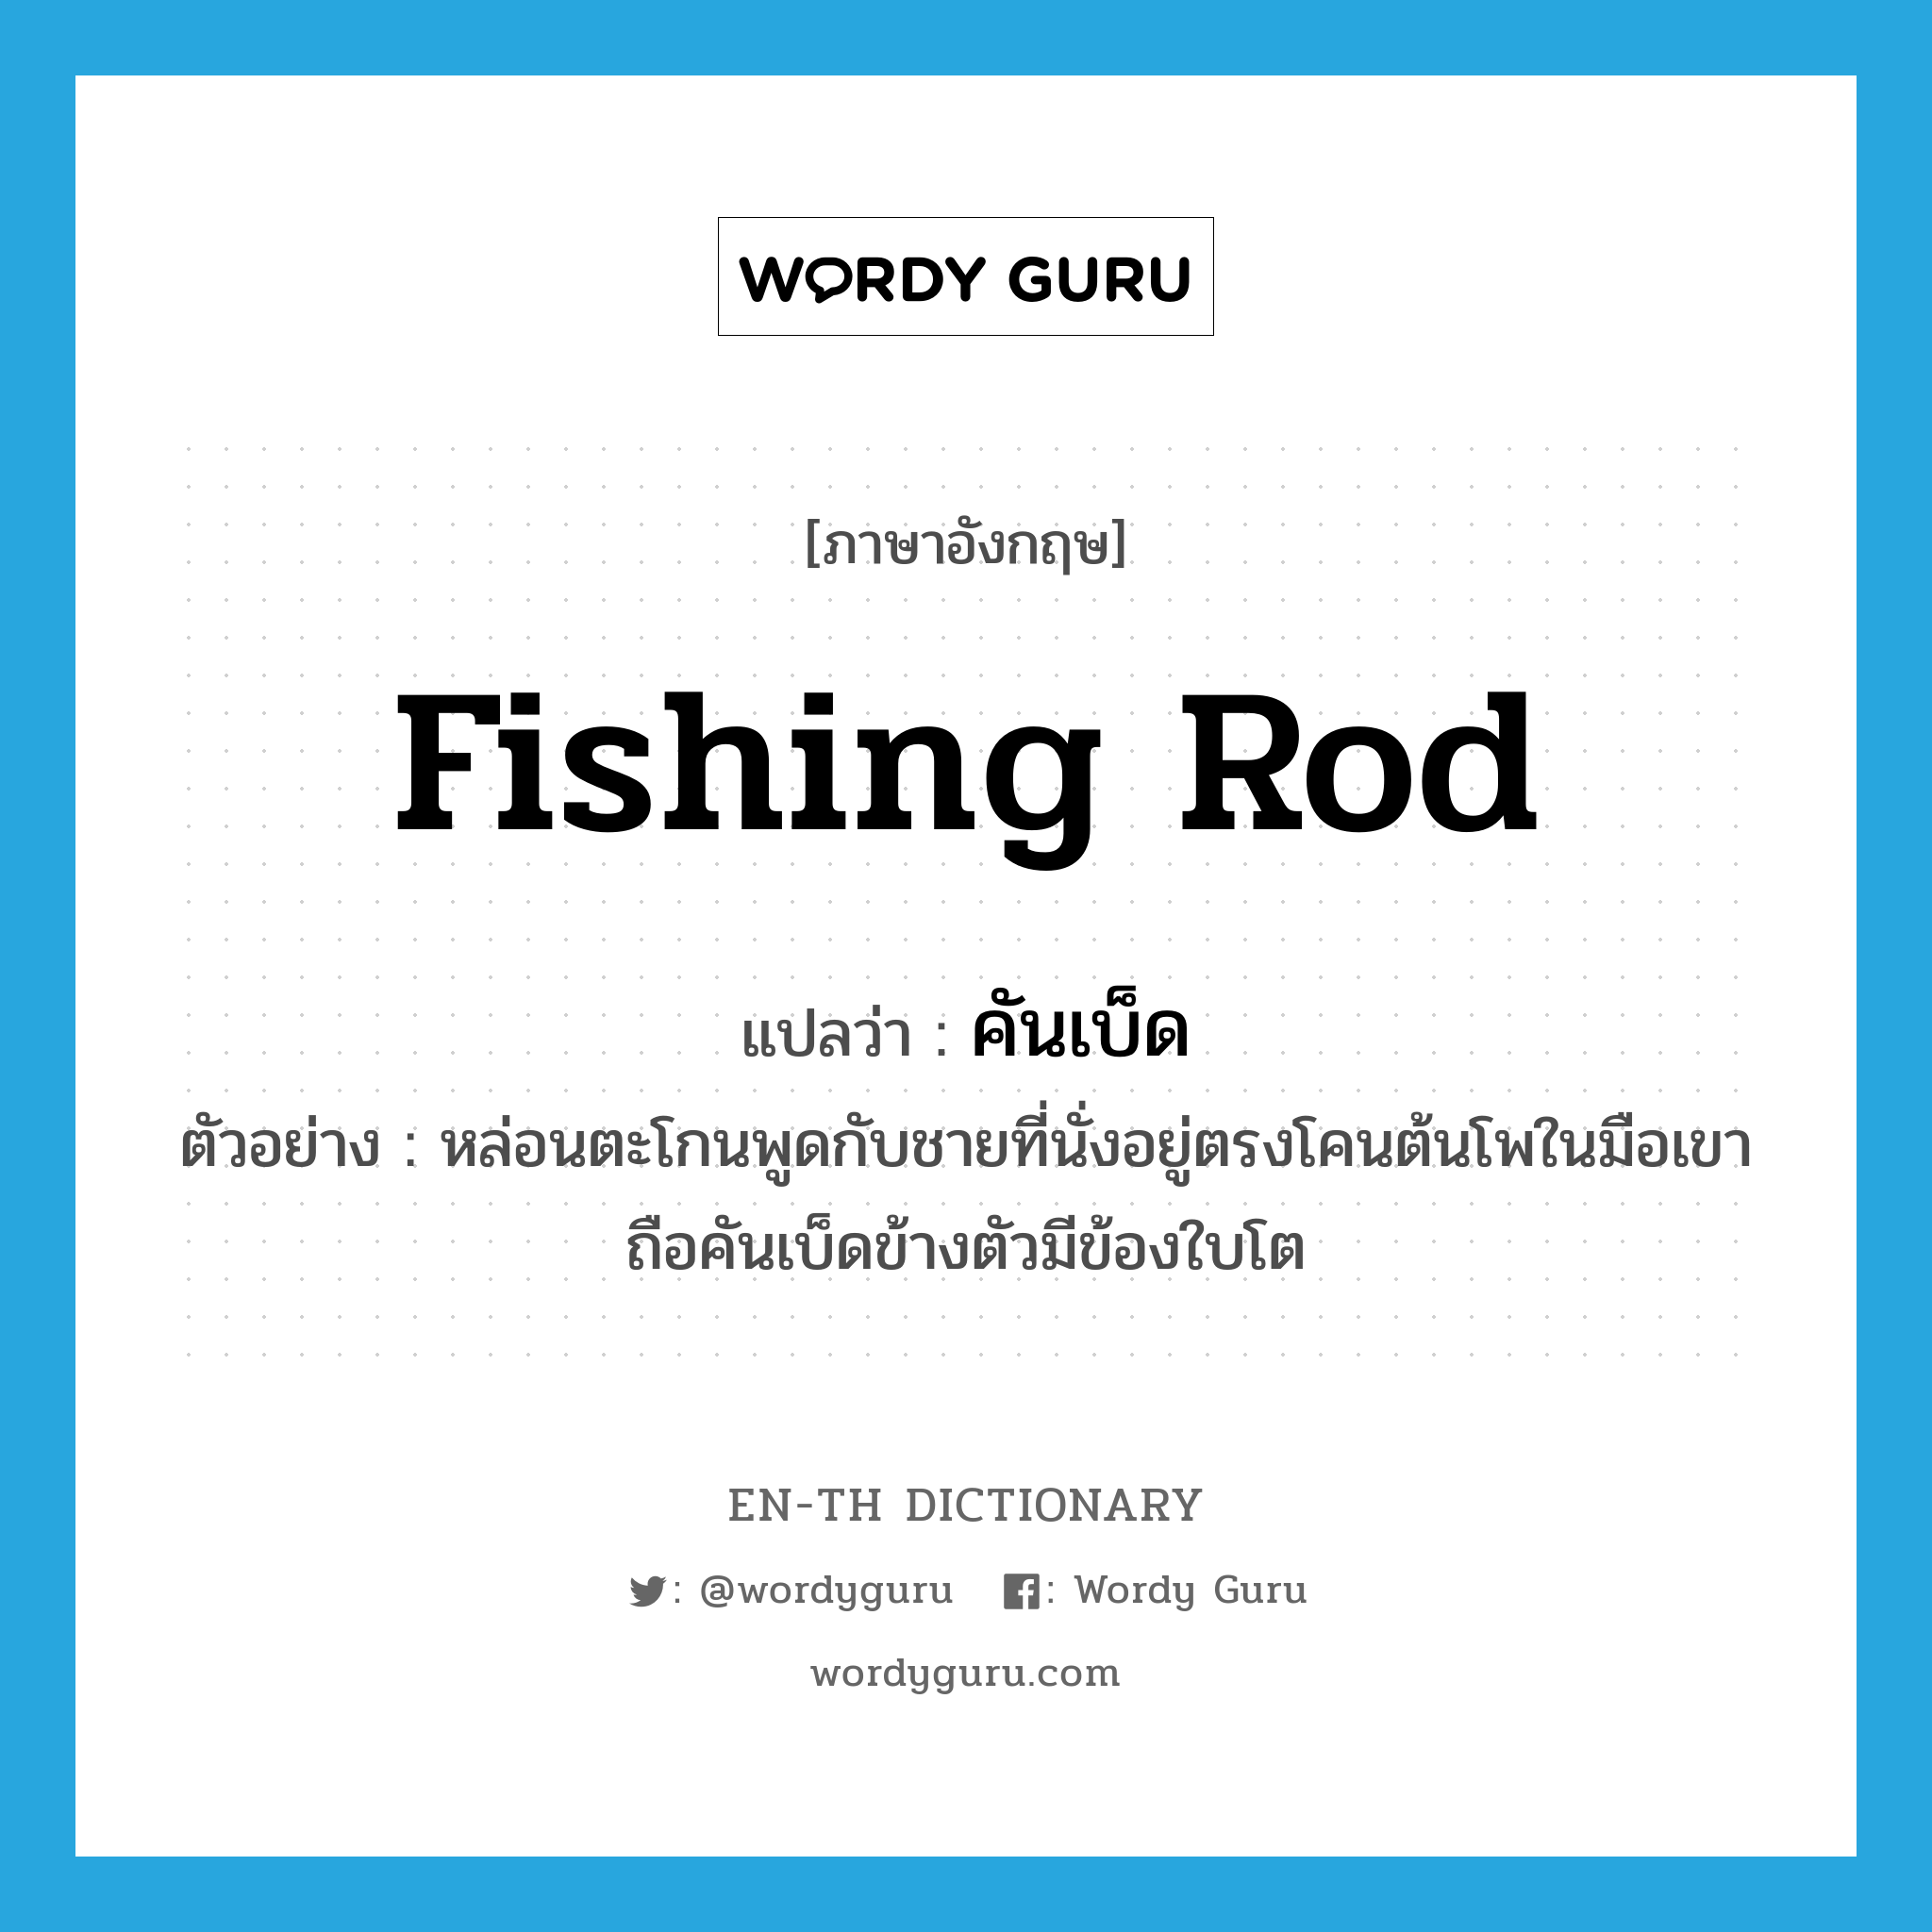 fishing rod แปลว่า?, คำศัพท์ภาษาอังกฤษ fishing rod แปลว่า คันเบ็ด ประเภท N ตัวอย่าง หล่อนตะโกนพูดกับชายที่นั่งอยู่ตรงโคนต้นโพในมือเขาถือคันเบ็ดข้างตัวมีข้องใบโต หมวด N